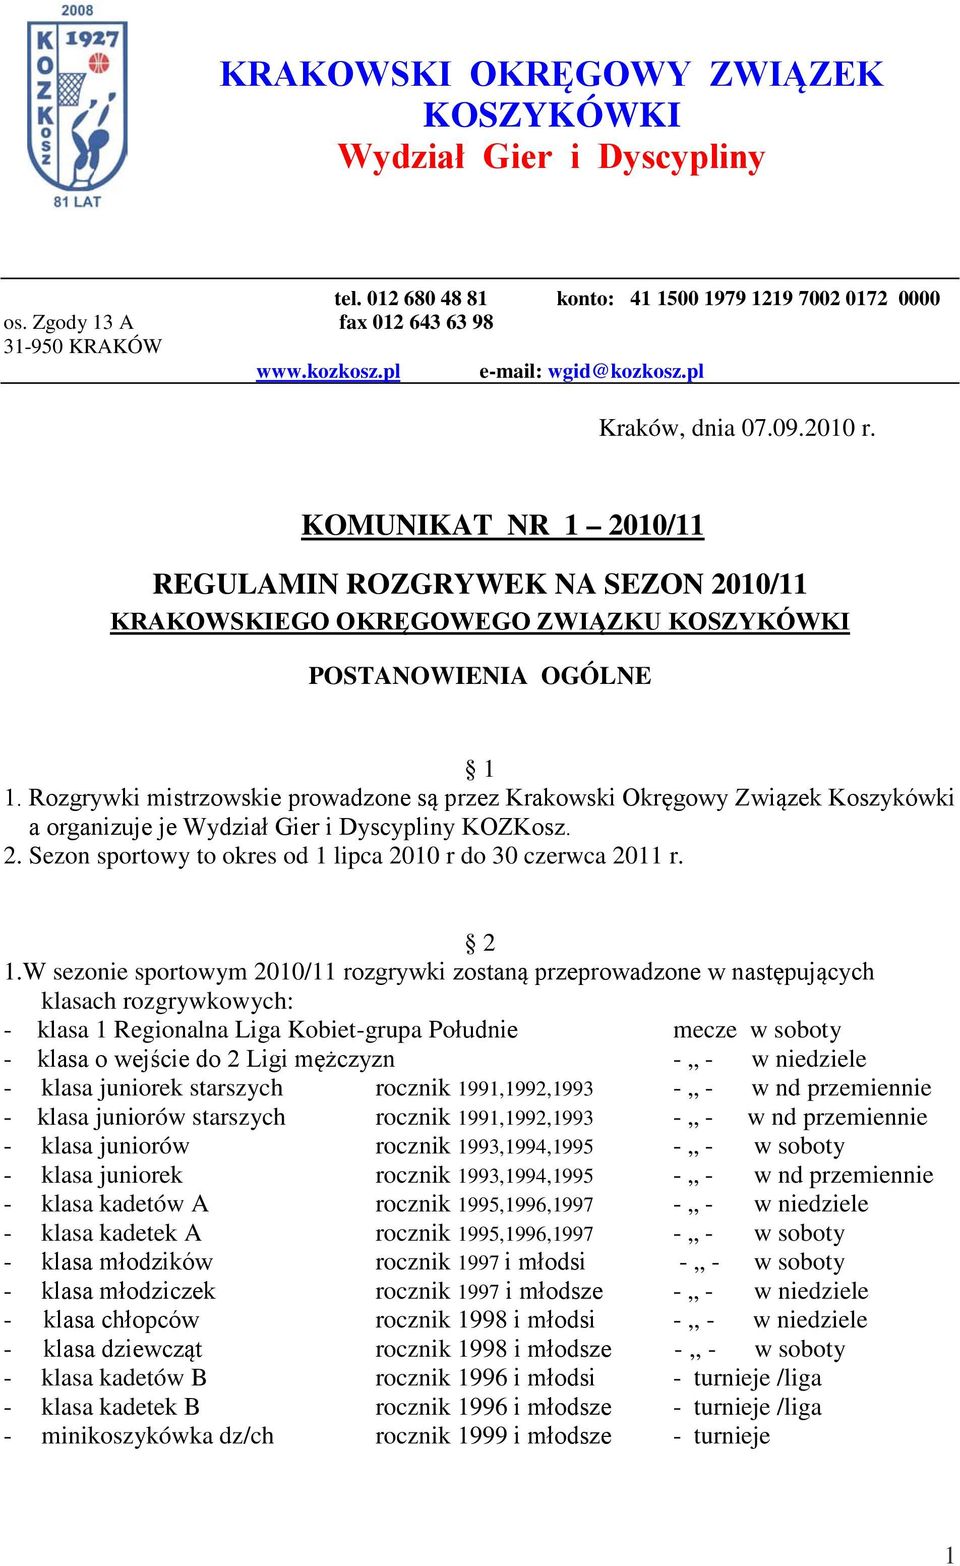 Rozgrywki mistrzowskie prowadzone są przez Krakowski Okręgowy Związek Koszykówki a organizuje je Wydział Gier i Dyscypliny KOZKosz. 2. Sezon sportowy to okres od 1 lipca 2010 r do 30 czerwca 2011 r.